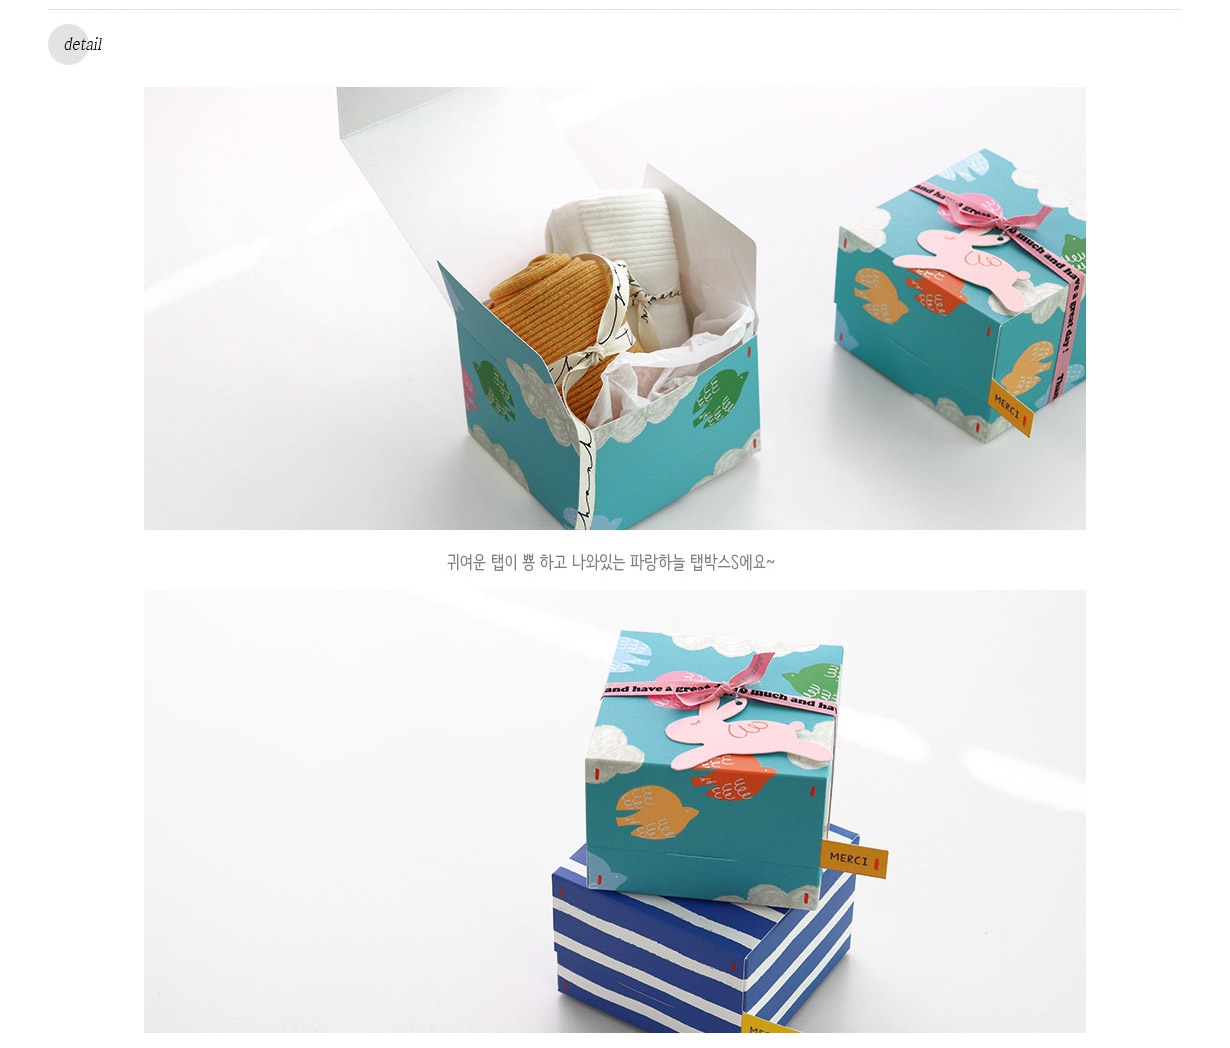 20个）设计ins感谢meric雪花酥费南雪玛德琳月饼牛轧糖饼干蛋糕盒